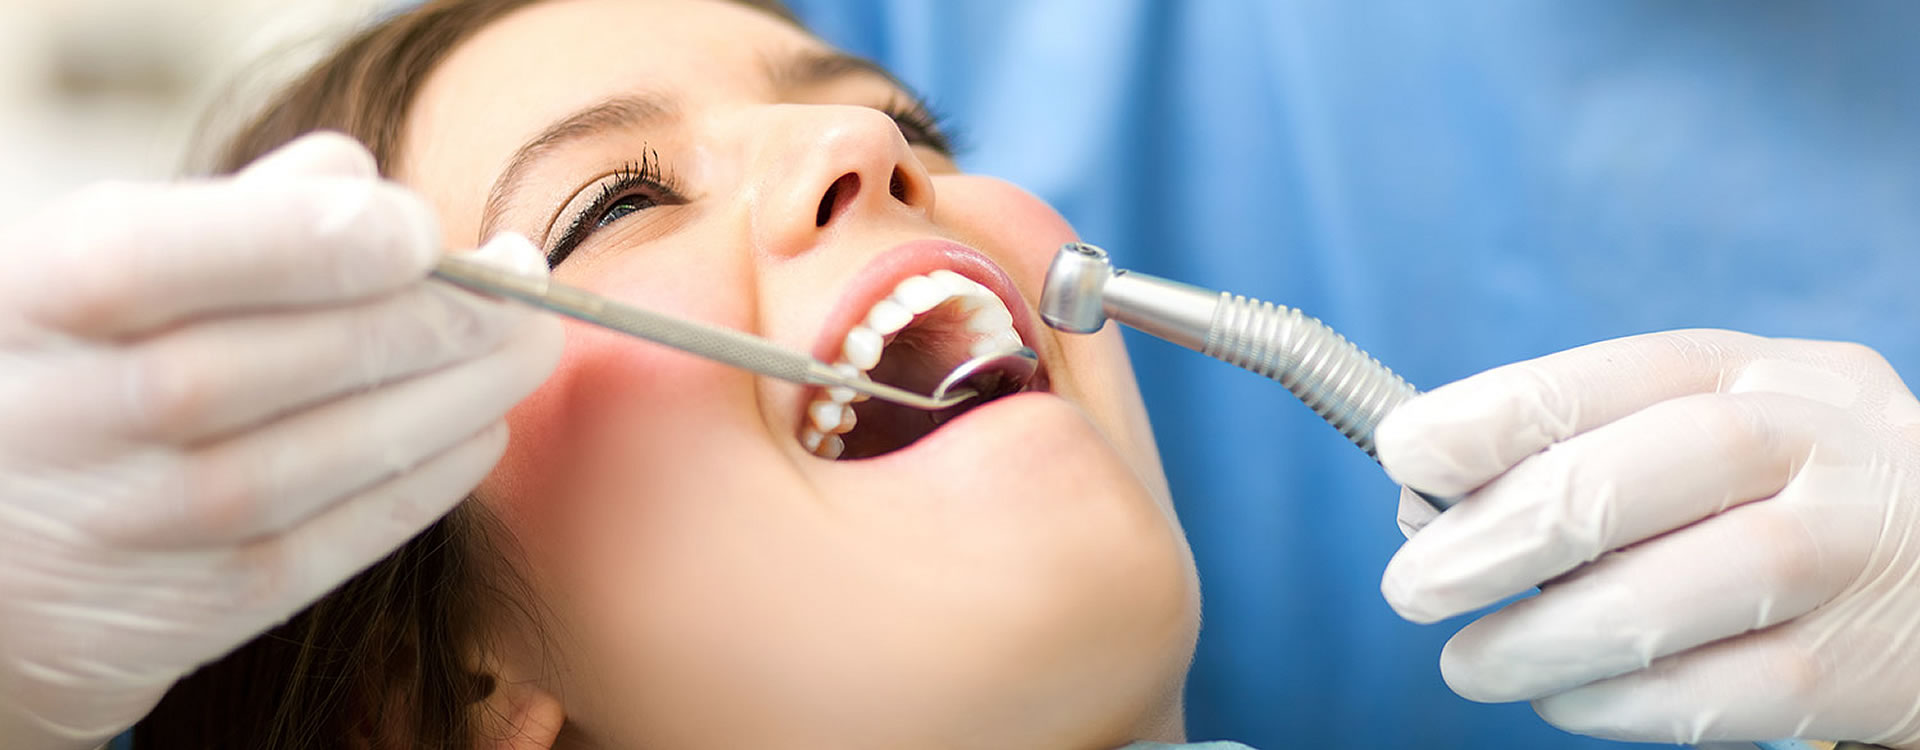 Procedimentos odontológicos de qualidade oferecidos pelo Plano Amil Dental.